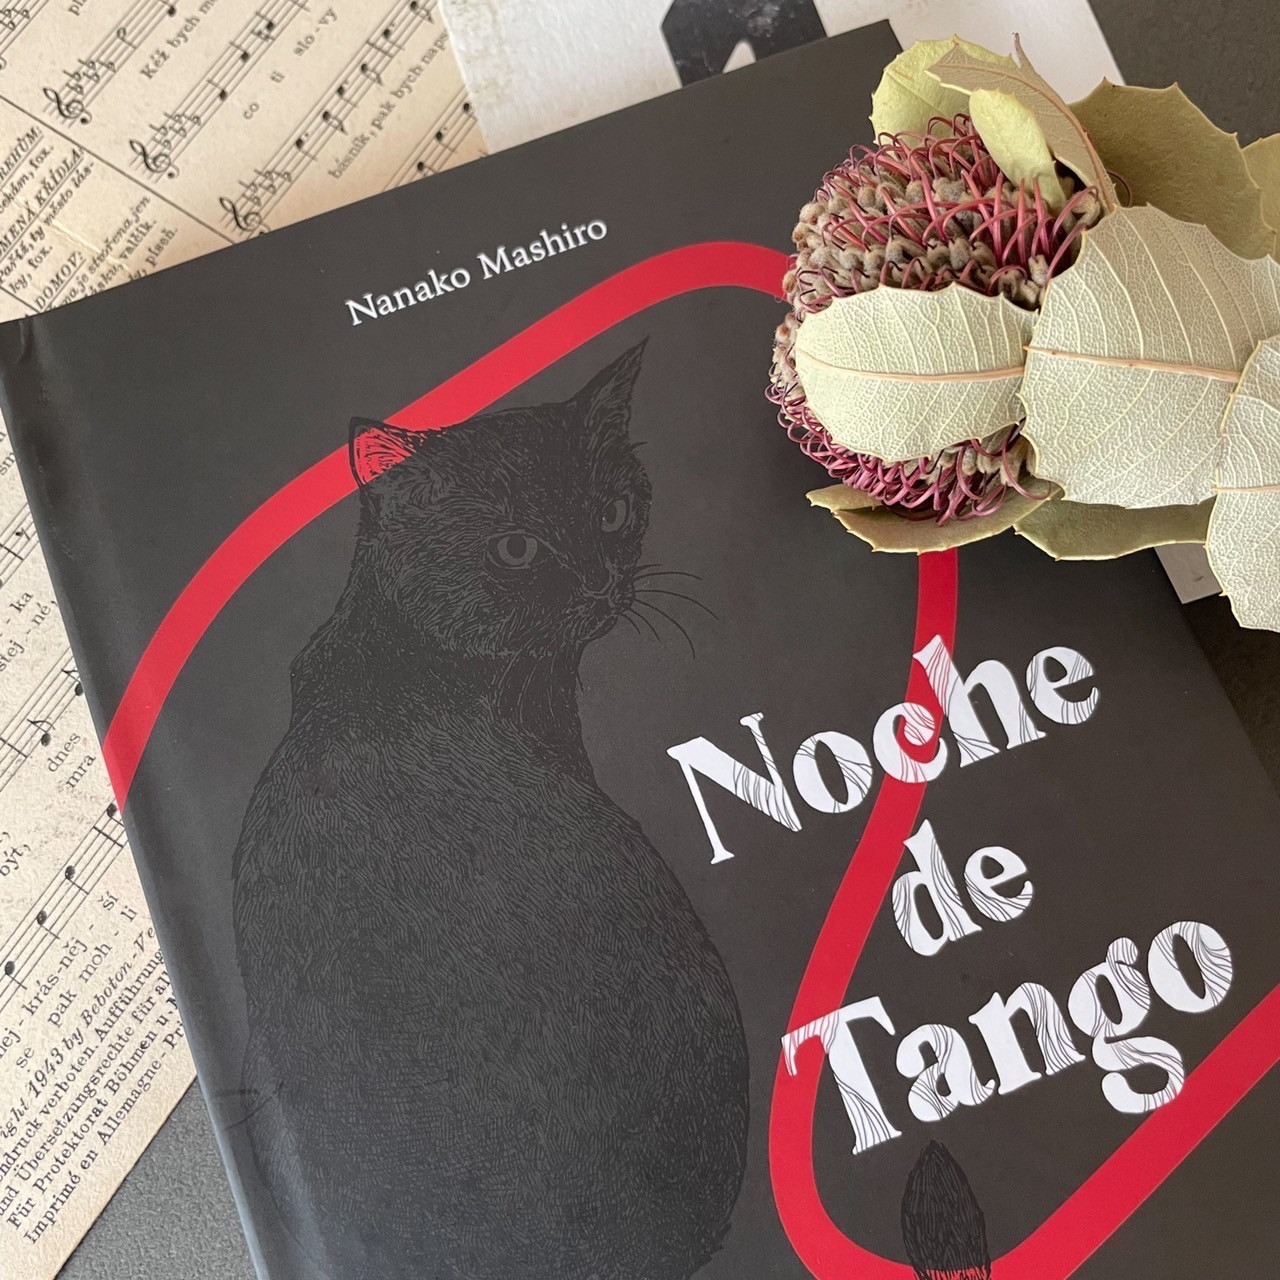 CD&BOOK『Noche de Tango』販売開始しました販売開始しました！